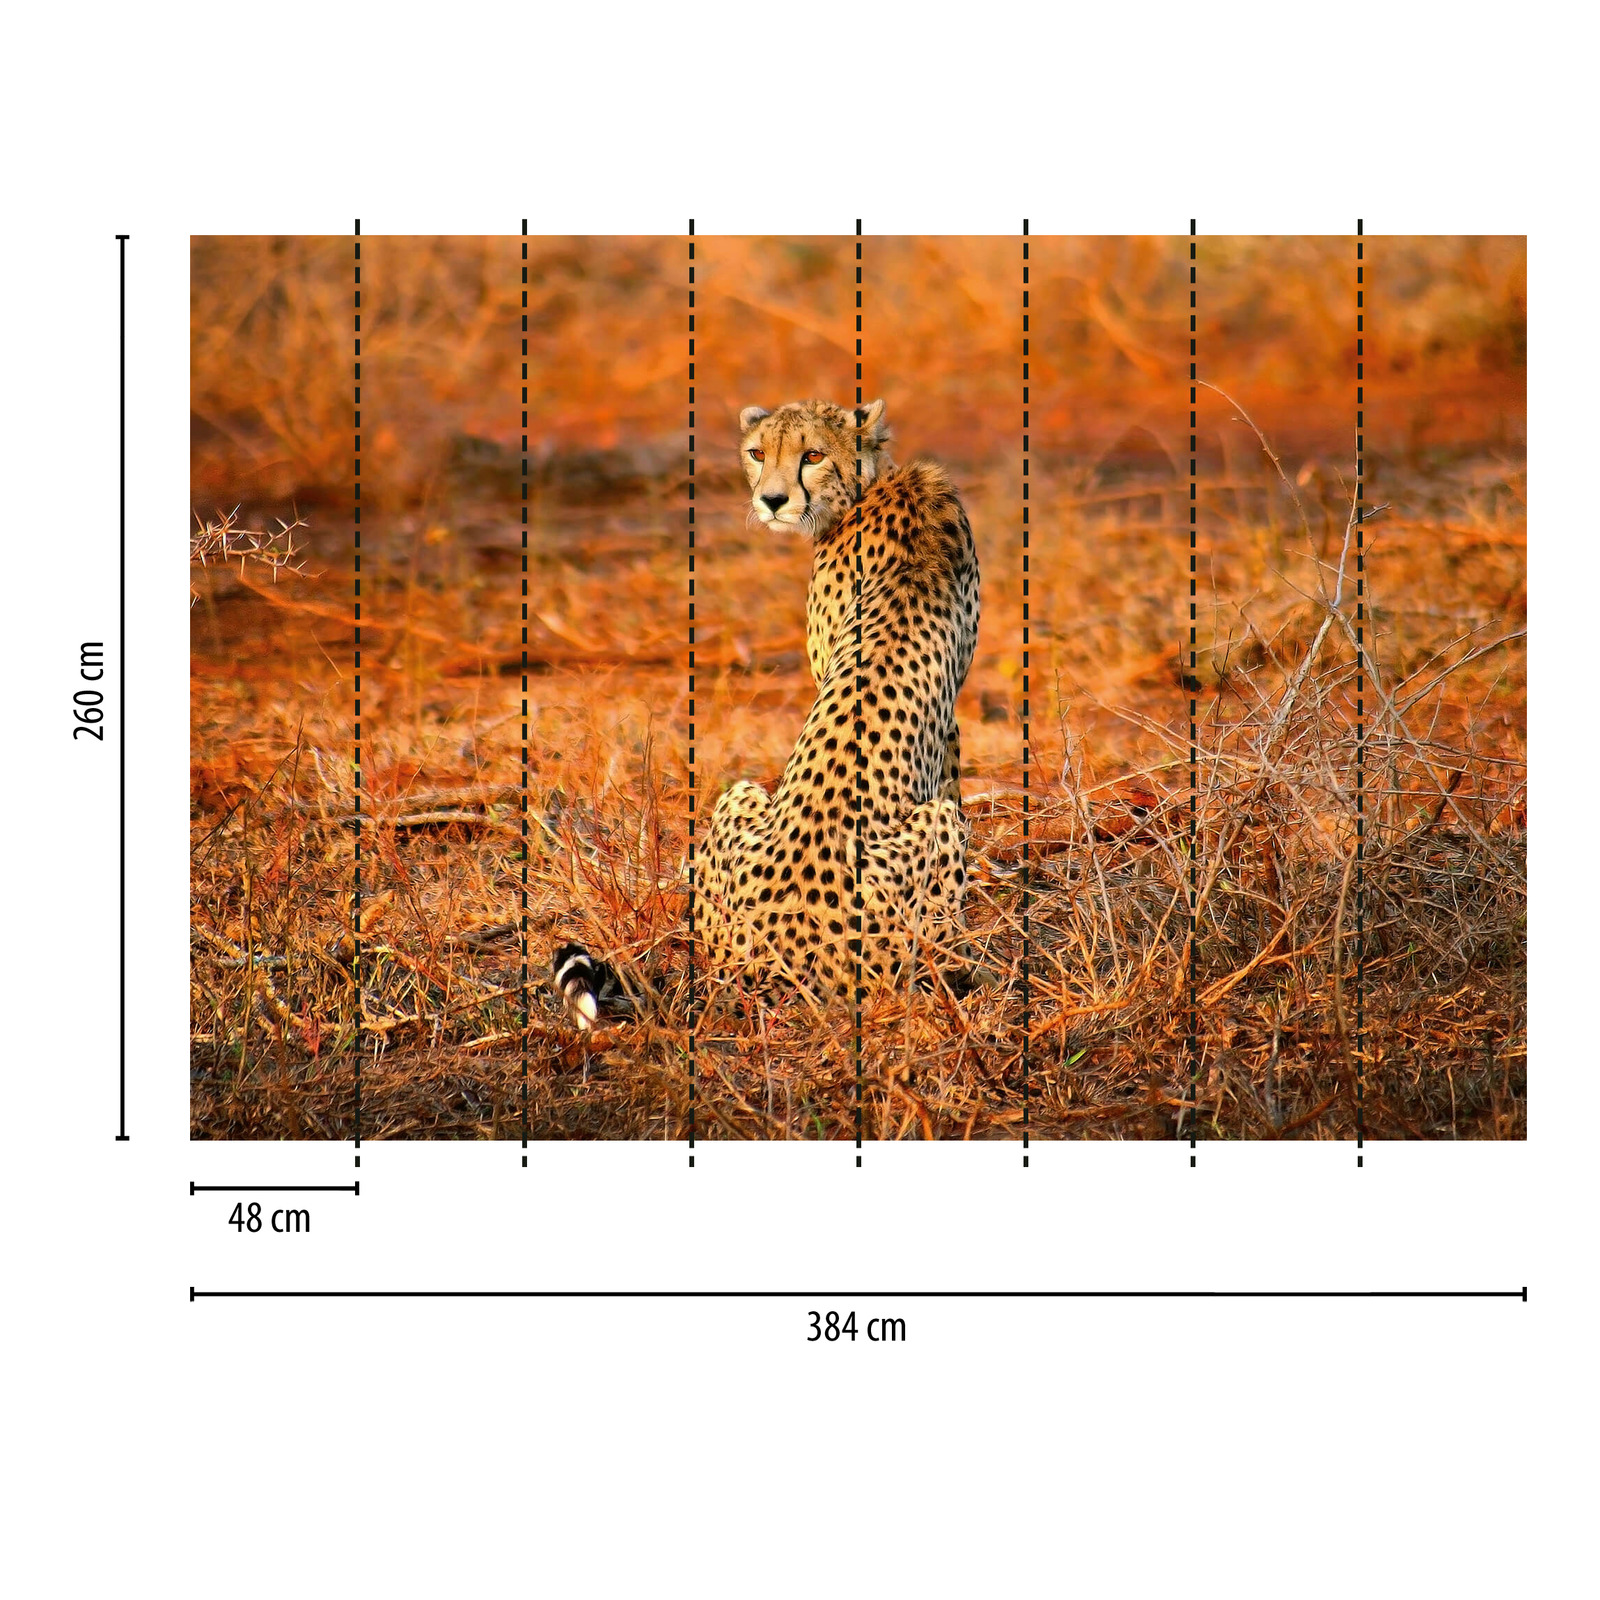             Carta da parati Leopard in Nature - Giallo, arancione, nero
        